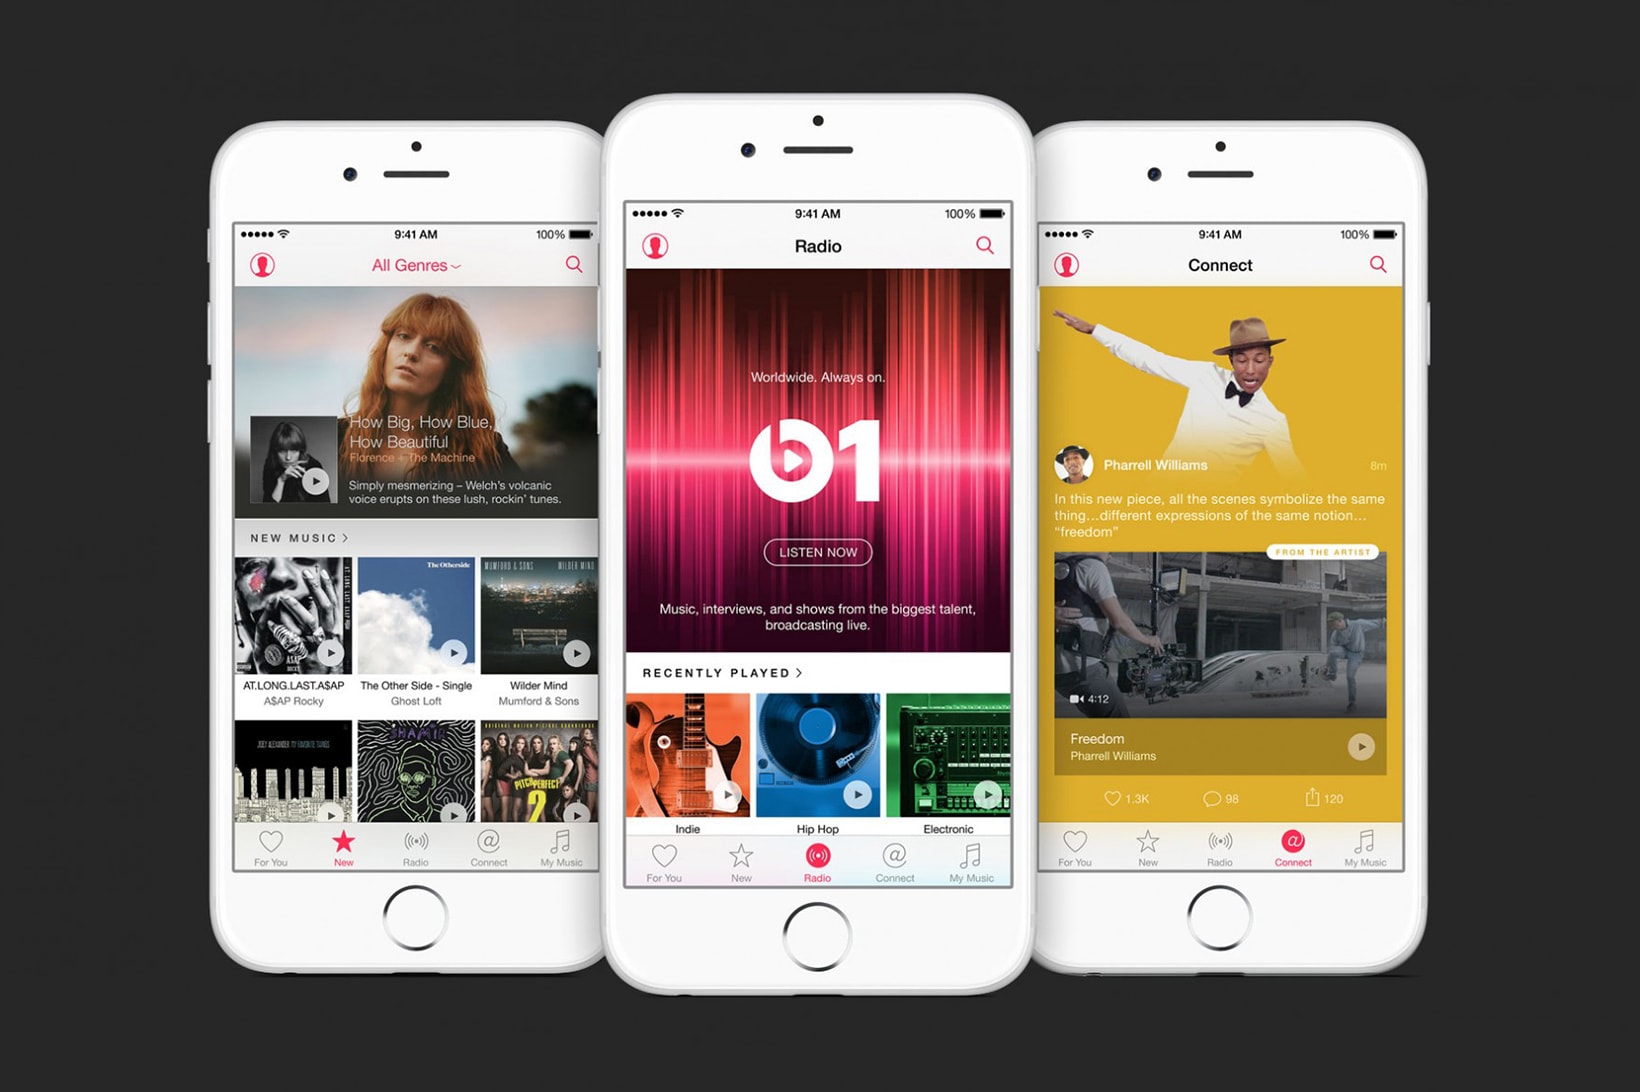 iOS 11 Apple Music Update Original Video Content